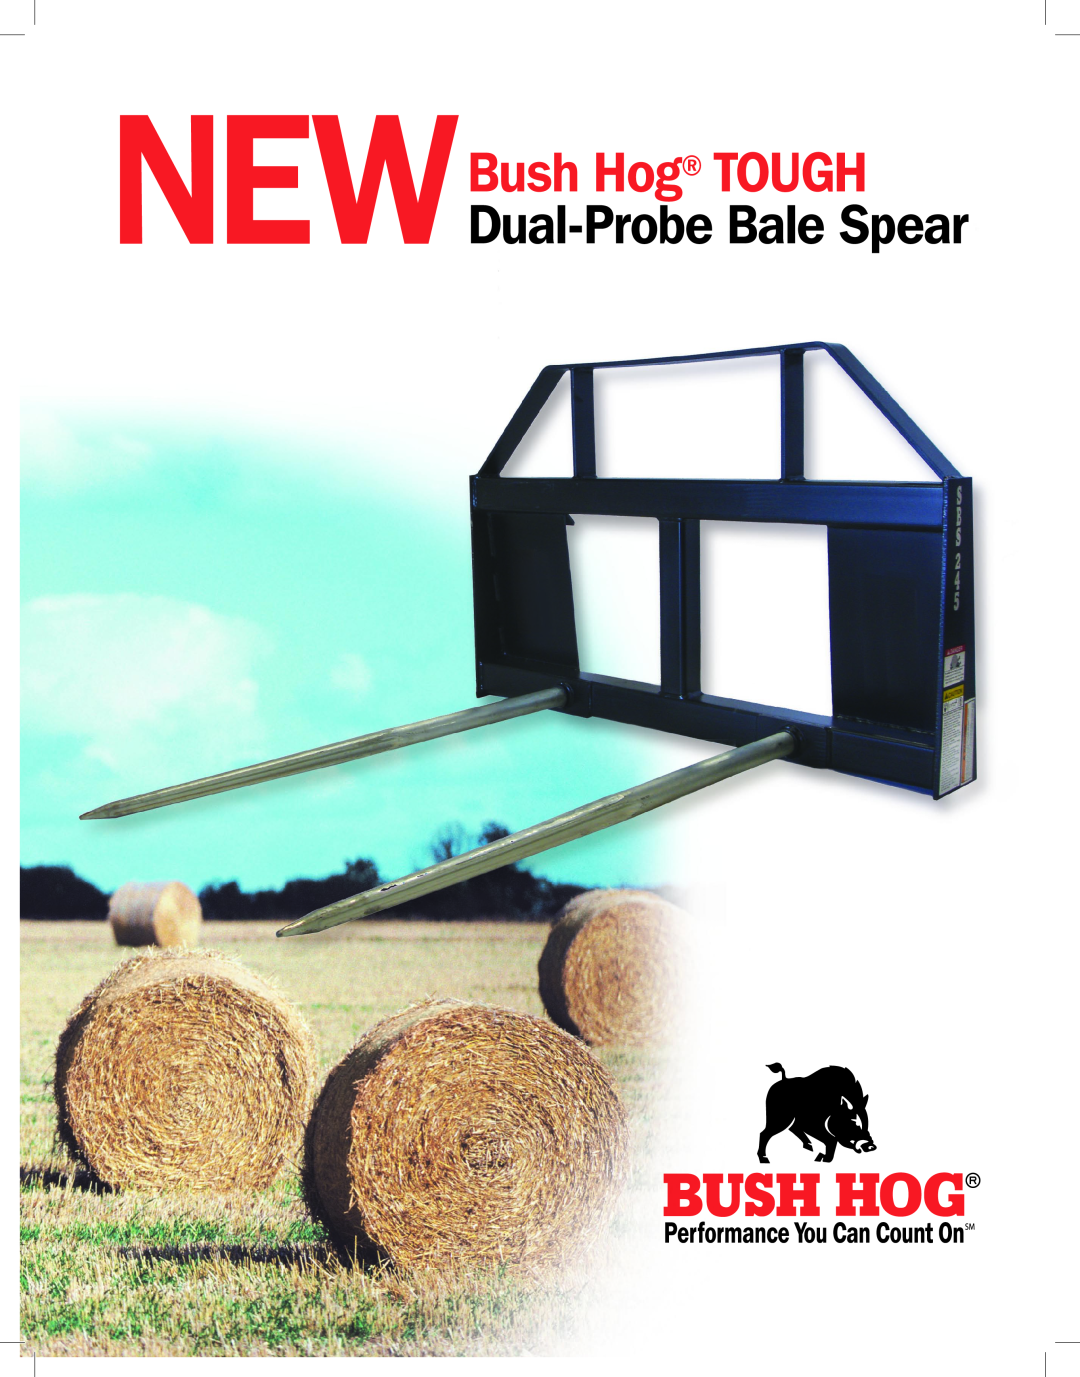 Bush Hog Dual-Probe Bale Spear manual NewBush Hog TOUGH 